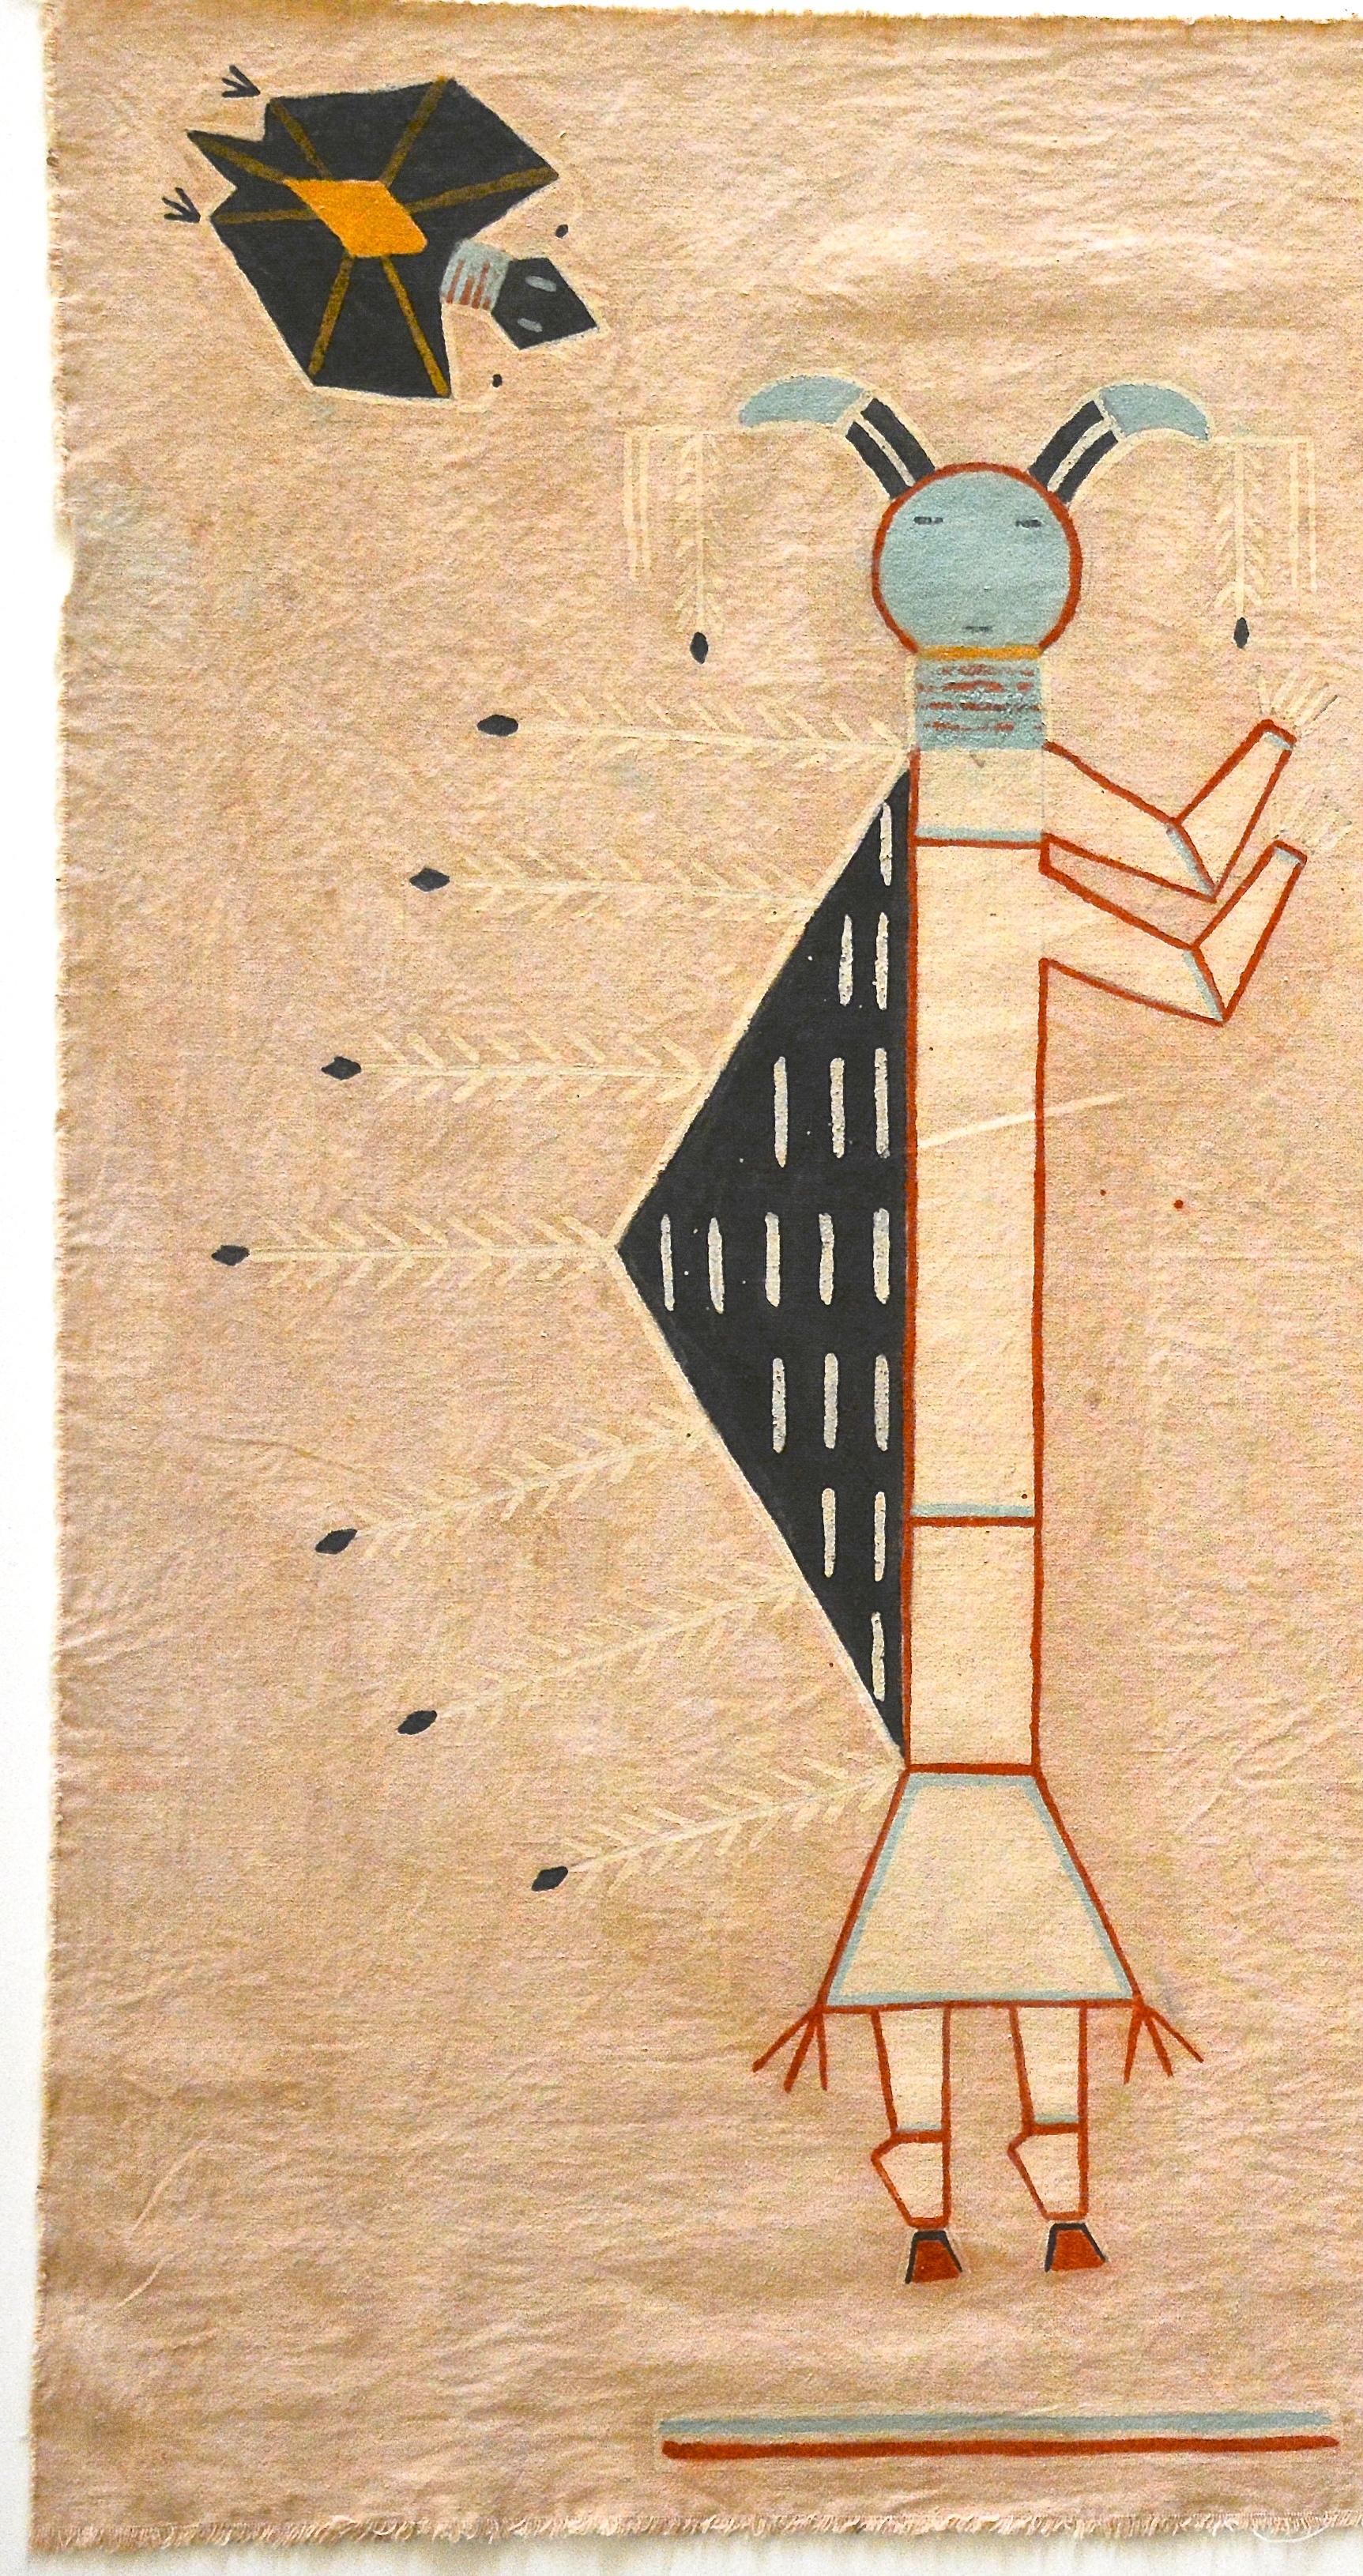 Unbekannter Navajo-Medizinmann
Navajo-Bildschrift auf Musselin
Zwei Buckeljungs mit zwei Fledermauswächtern
Musselin, Mineralpigmente, Sand
Navajo-Medizinmann aktiv 1947 - 1970

Um sich an die verschiedenen Gemälde zu erinnern, greift der